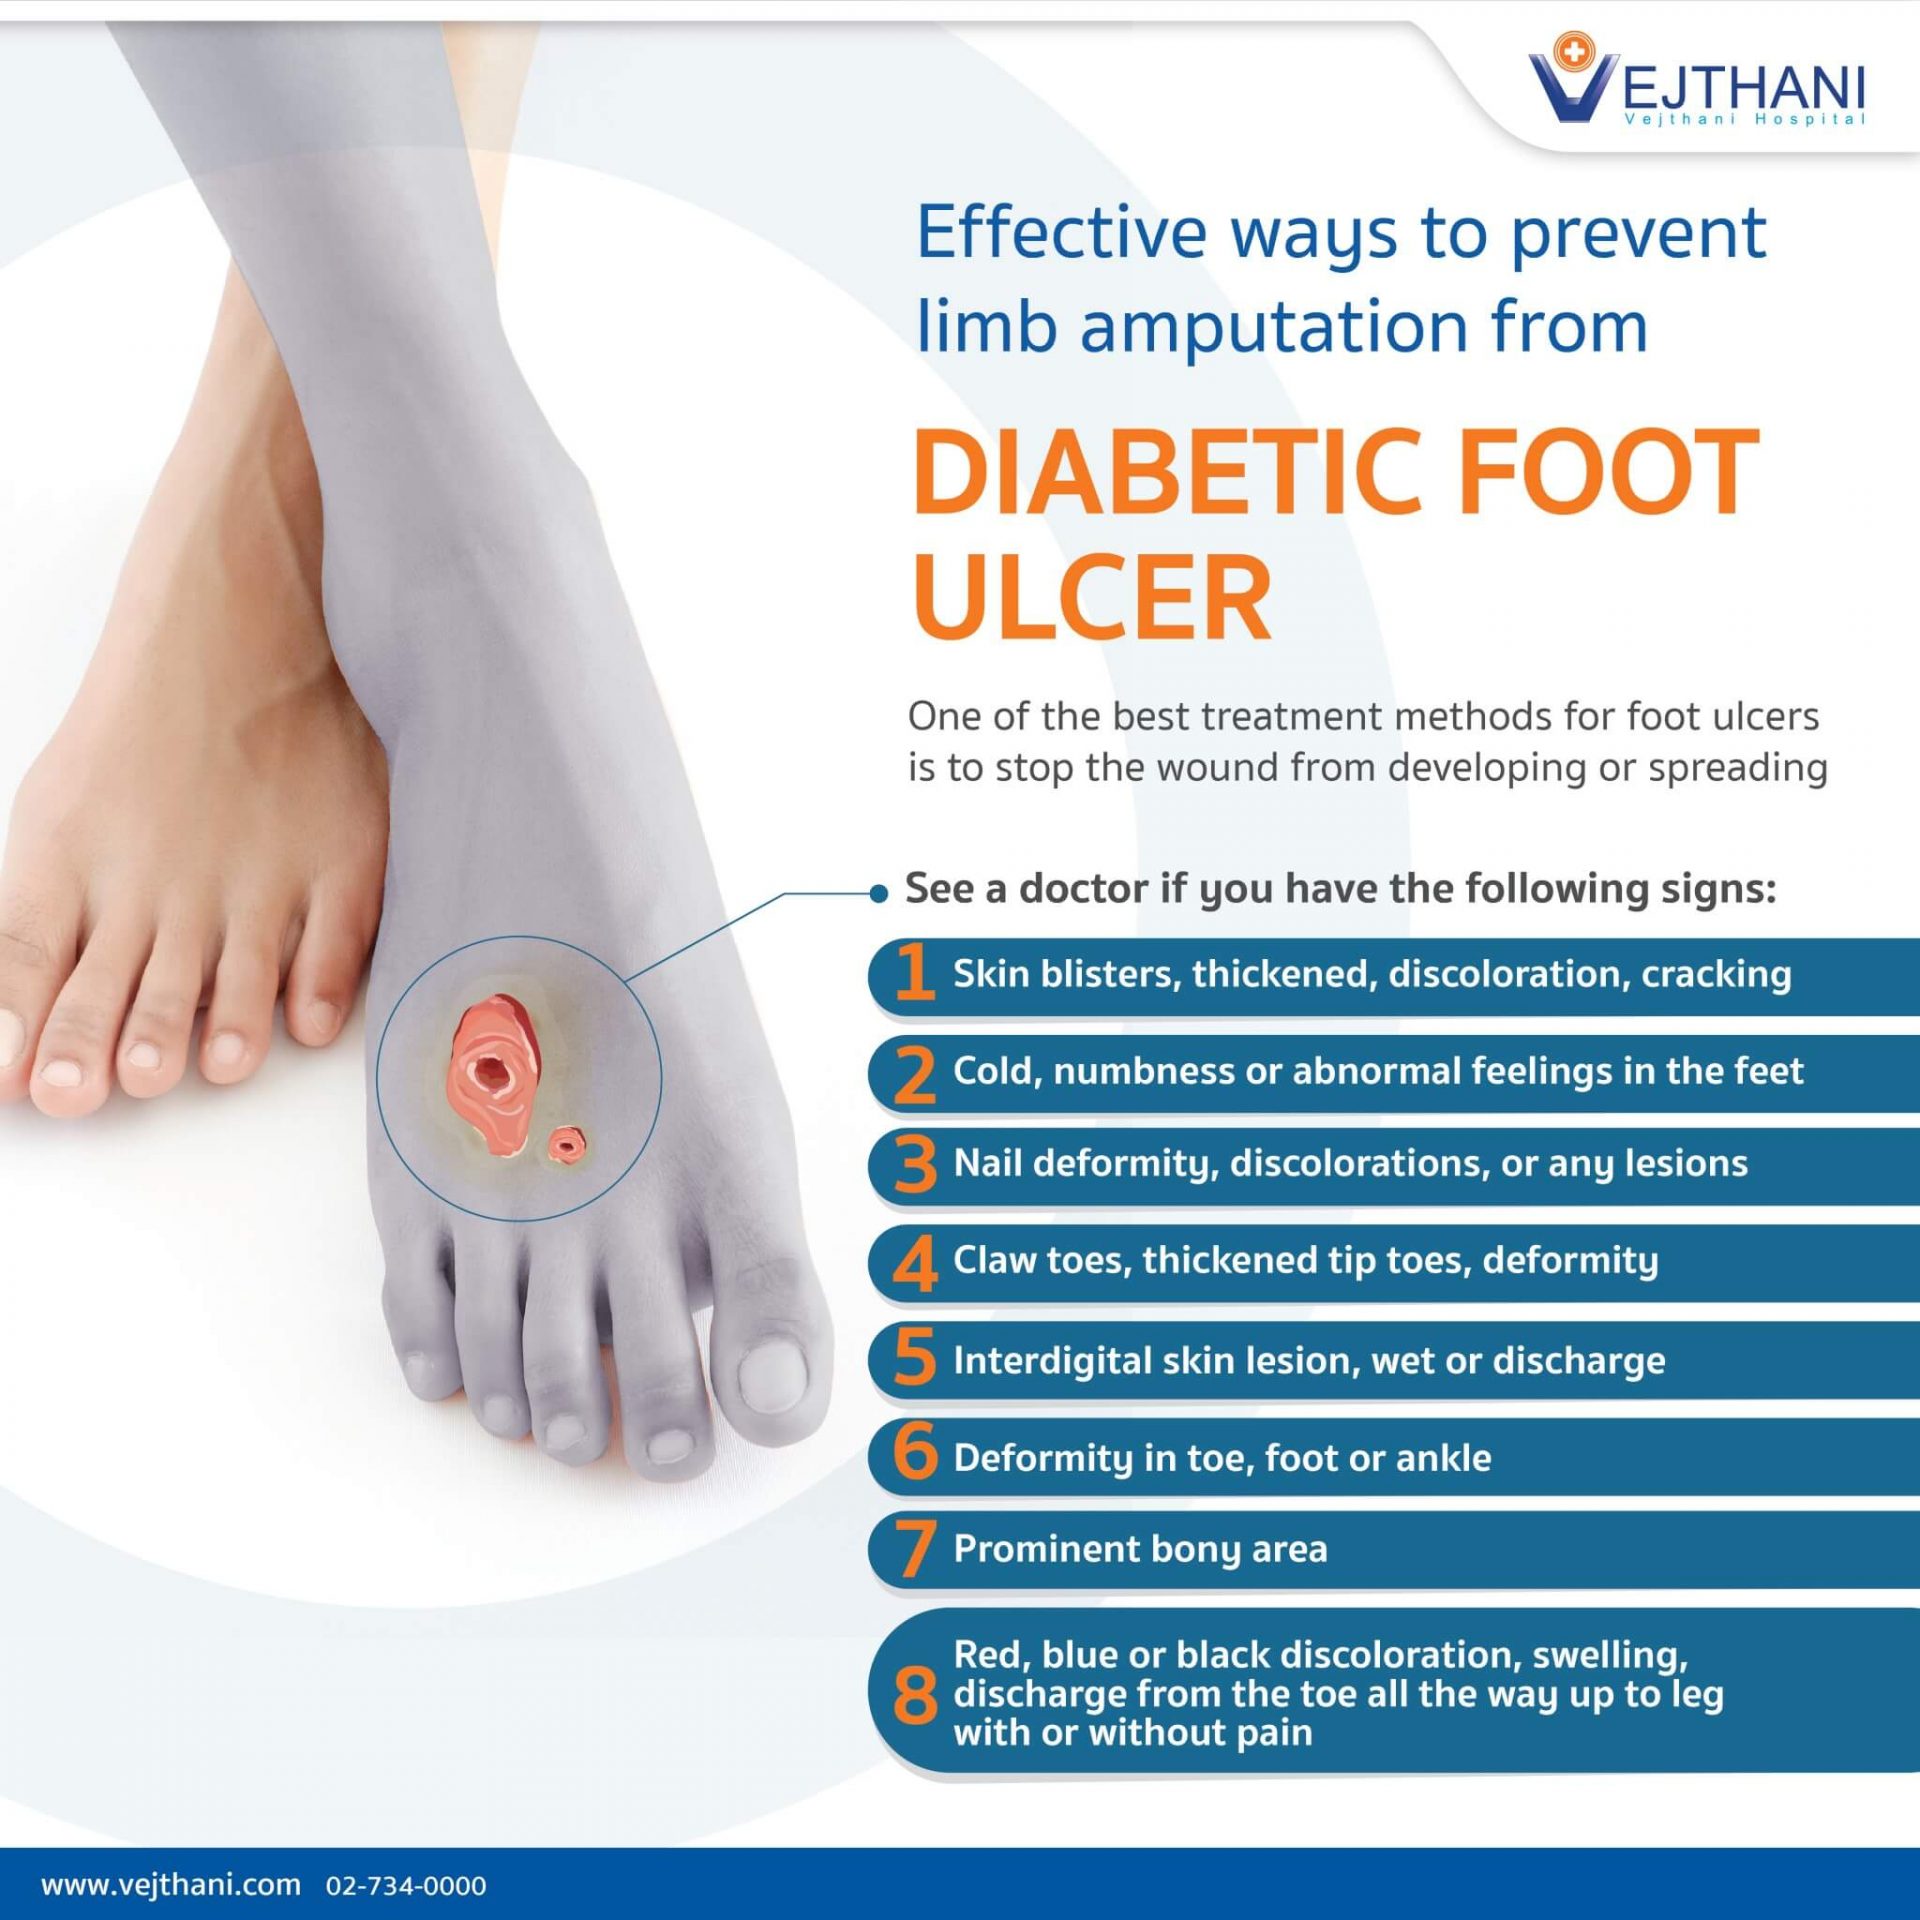 Ulcer prevention for diabetics